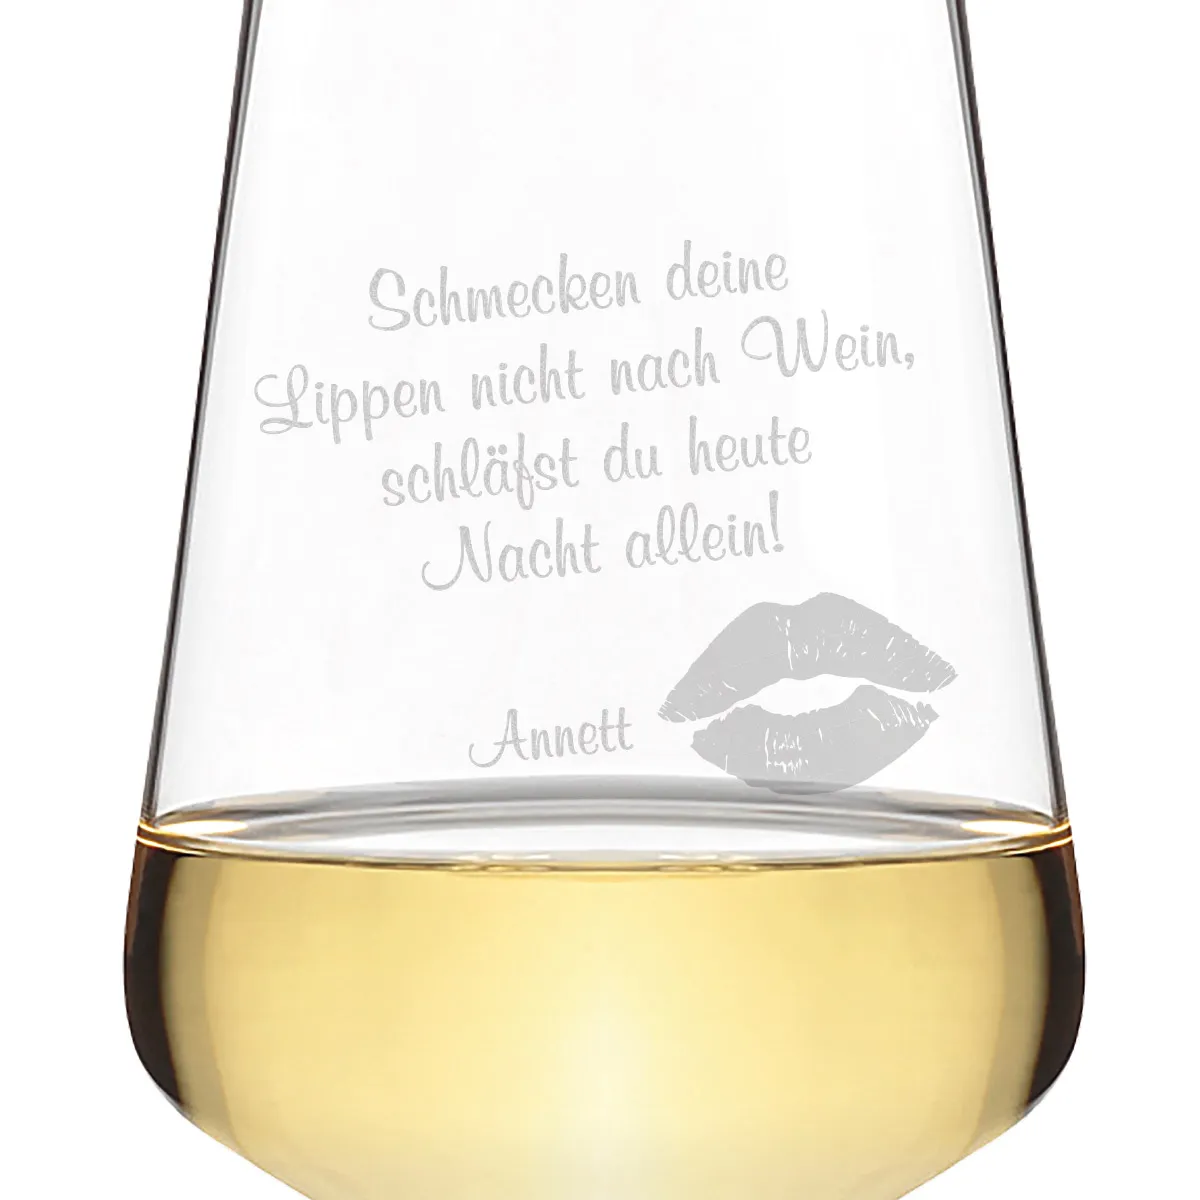 Leonardo Weißweinglas 560 ml - Kussmund